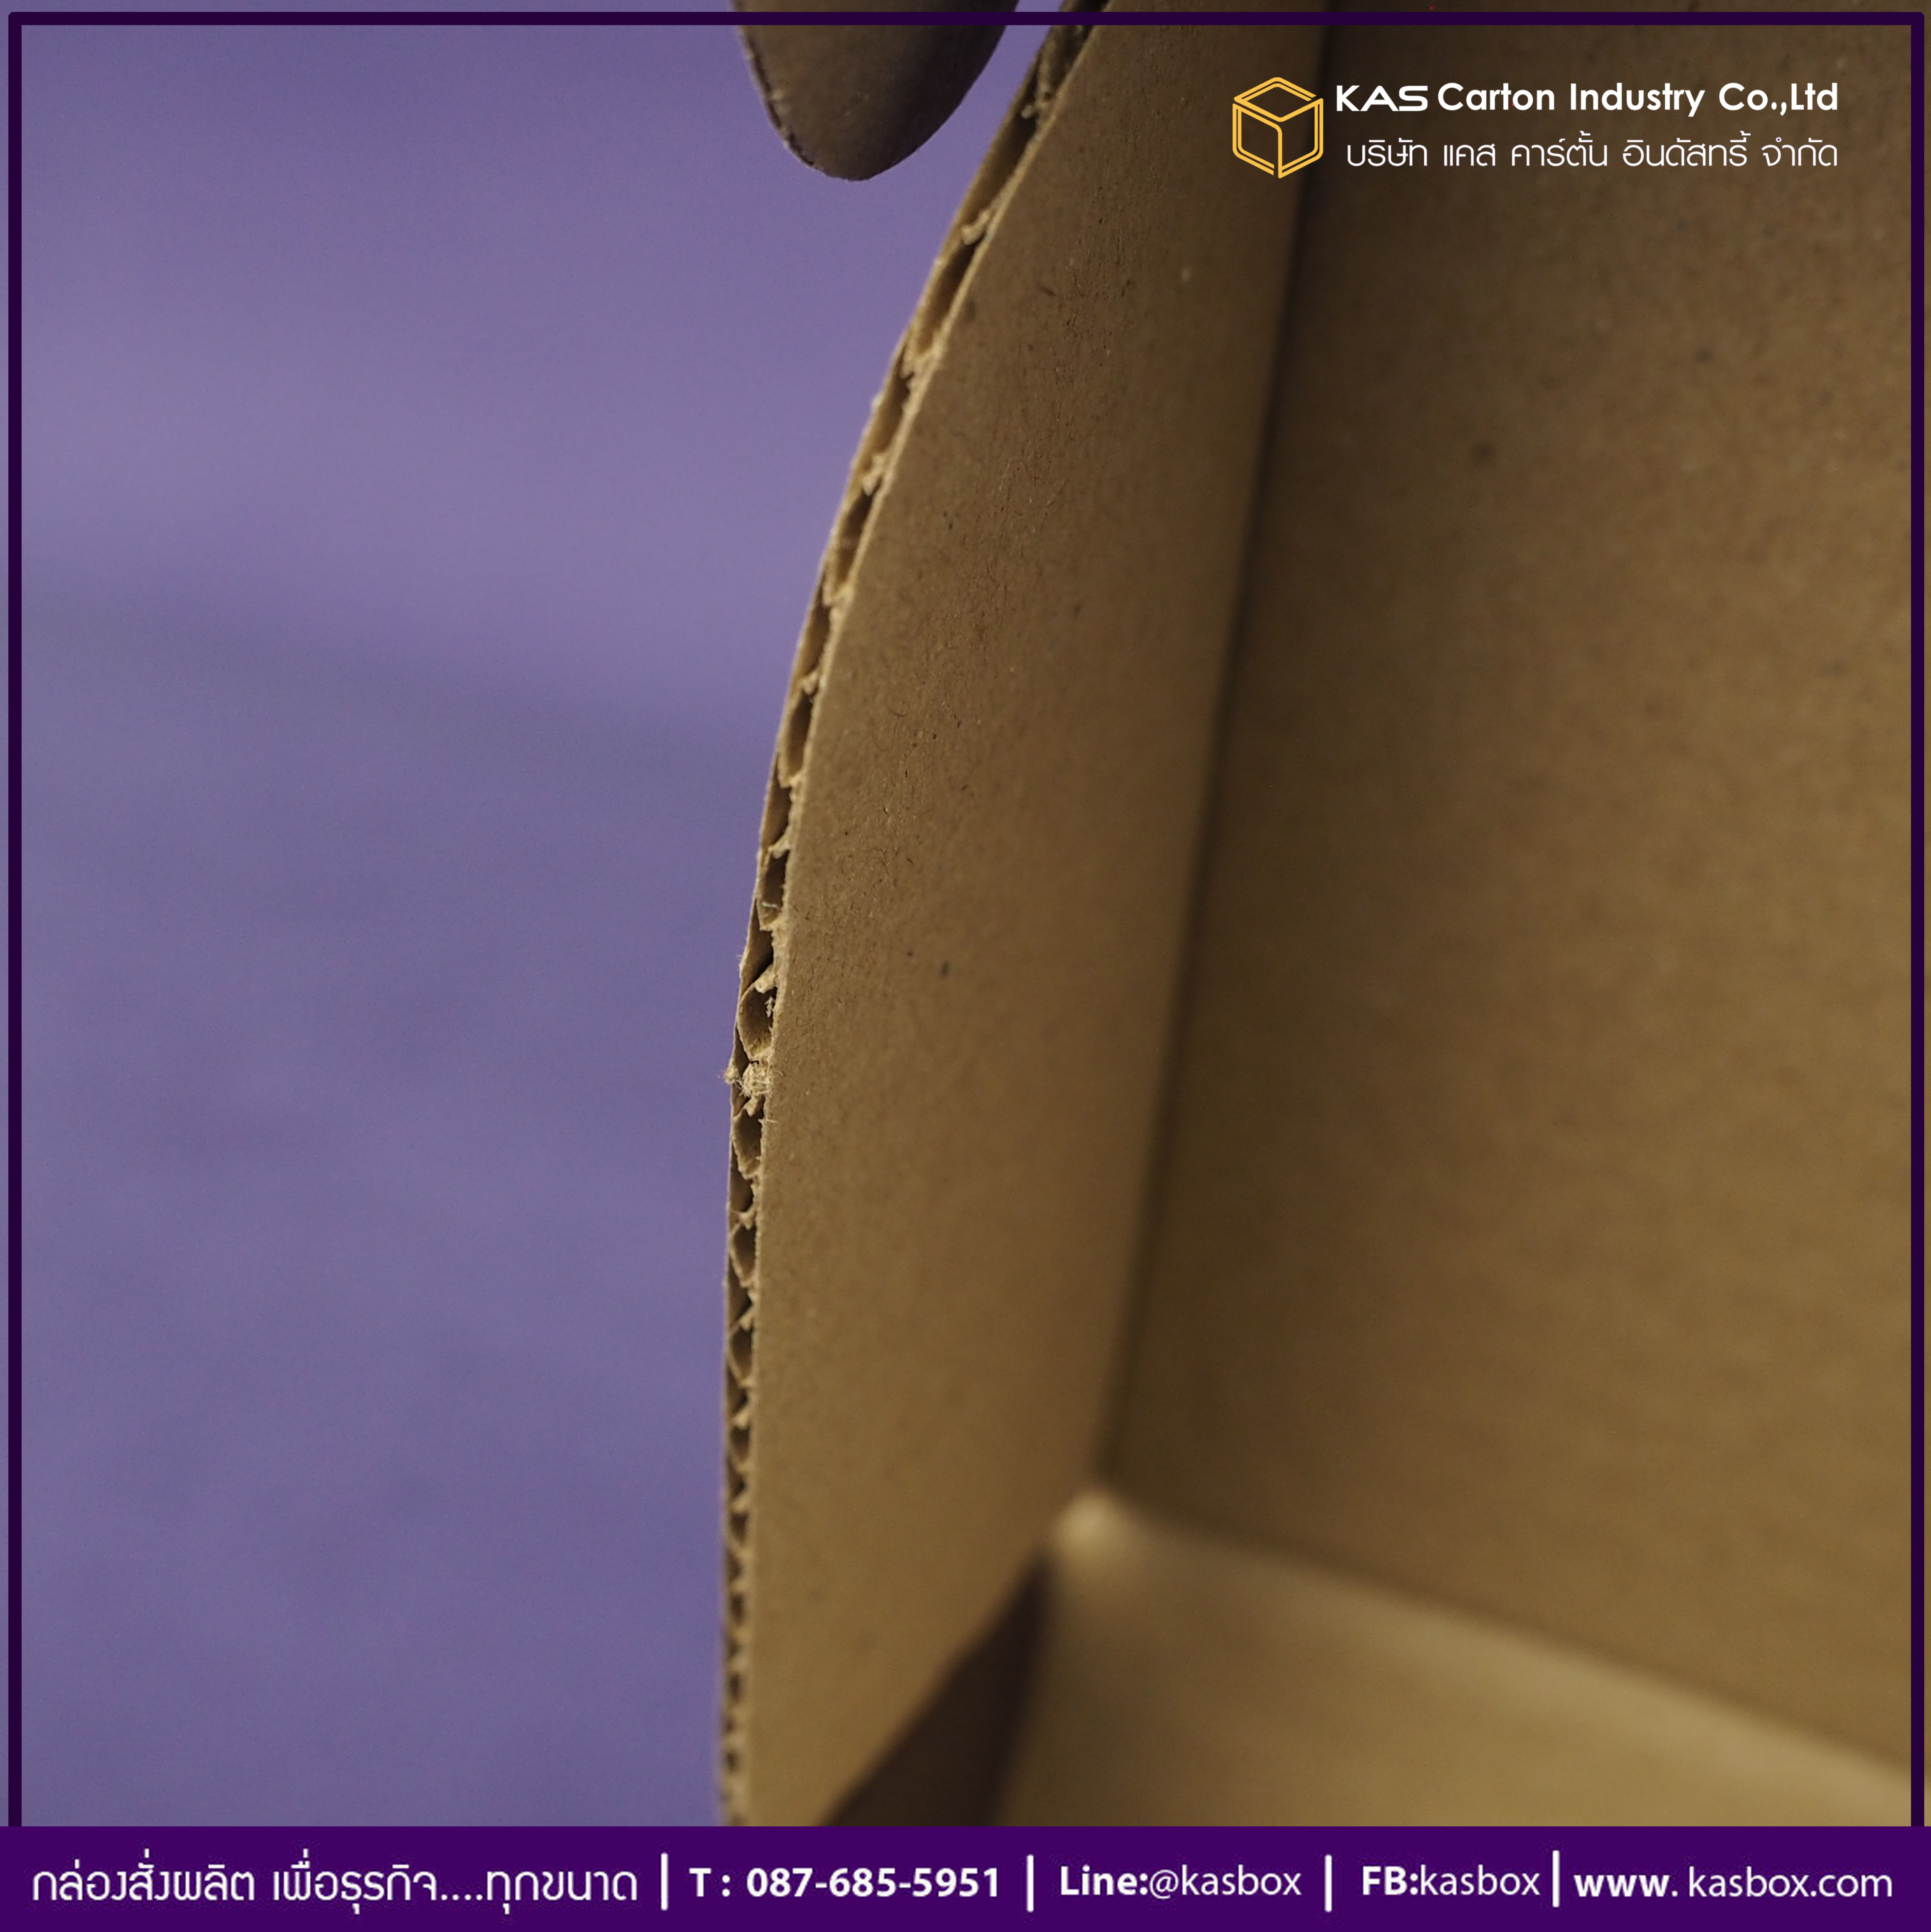 กล่องลูกฟูก สำเร็จรูป และ สั่งผลิต ตามความต้องการลูกค้า กล่องกระดาษลูกฟูก กล่องใส่เครื่องประดับ